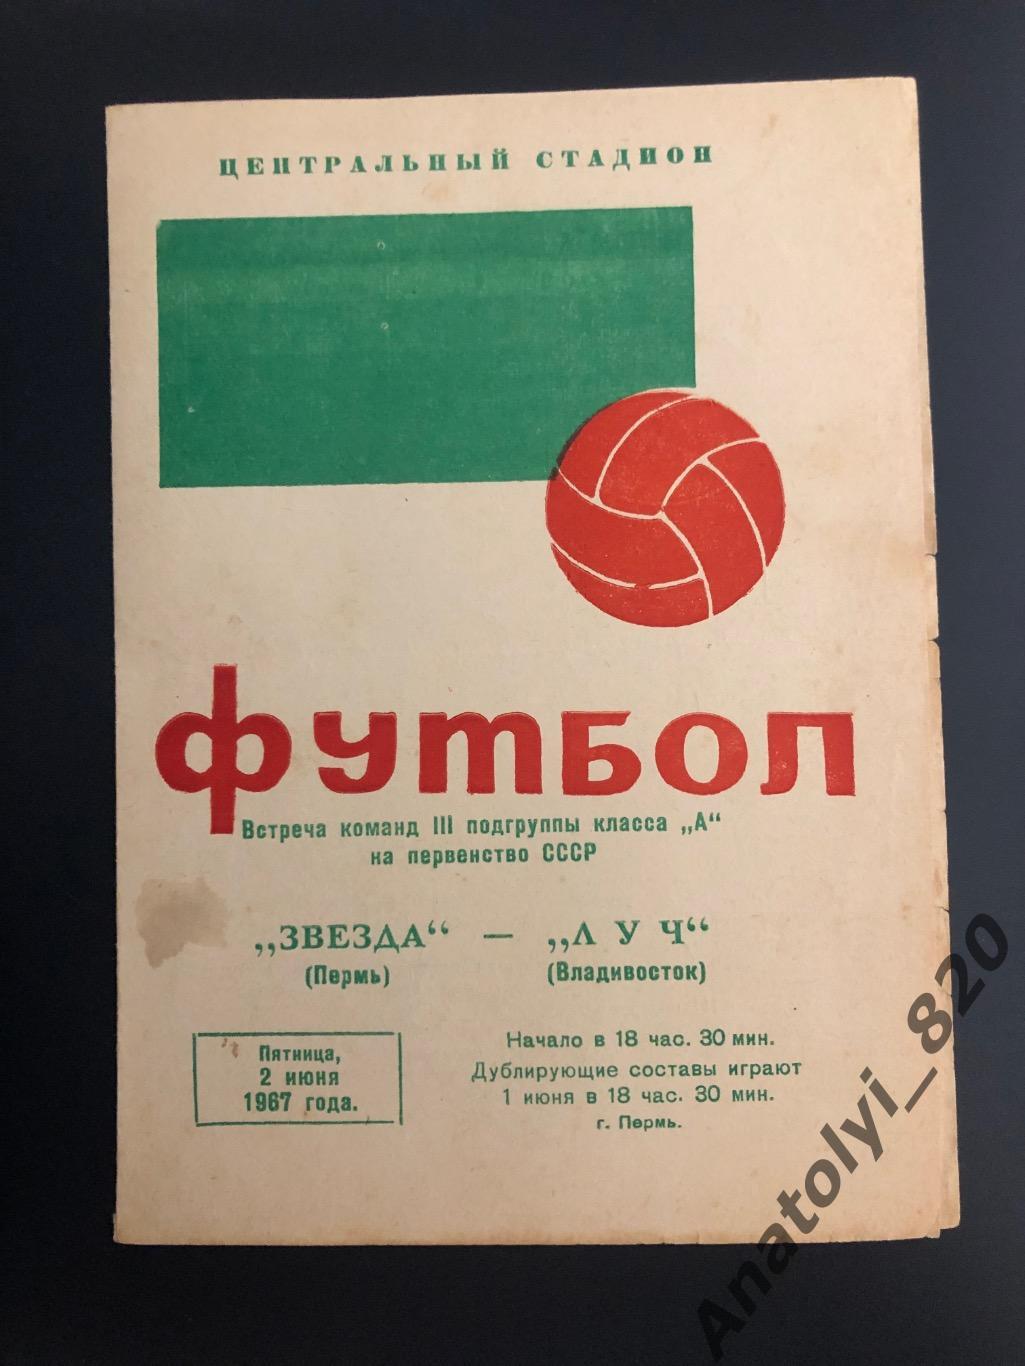 Звезда Пермь - Луч Владивосток, 02.06.1967